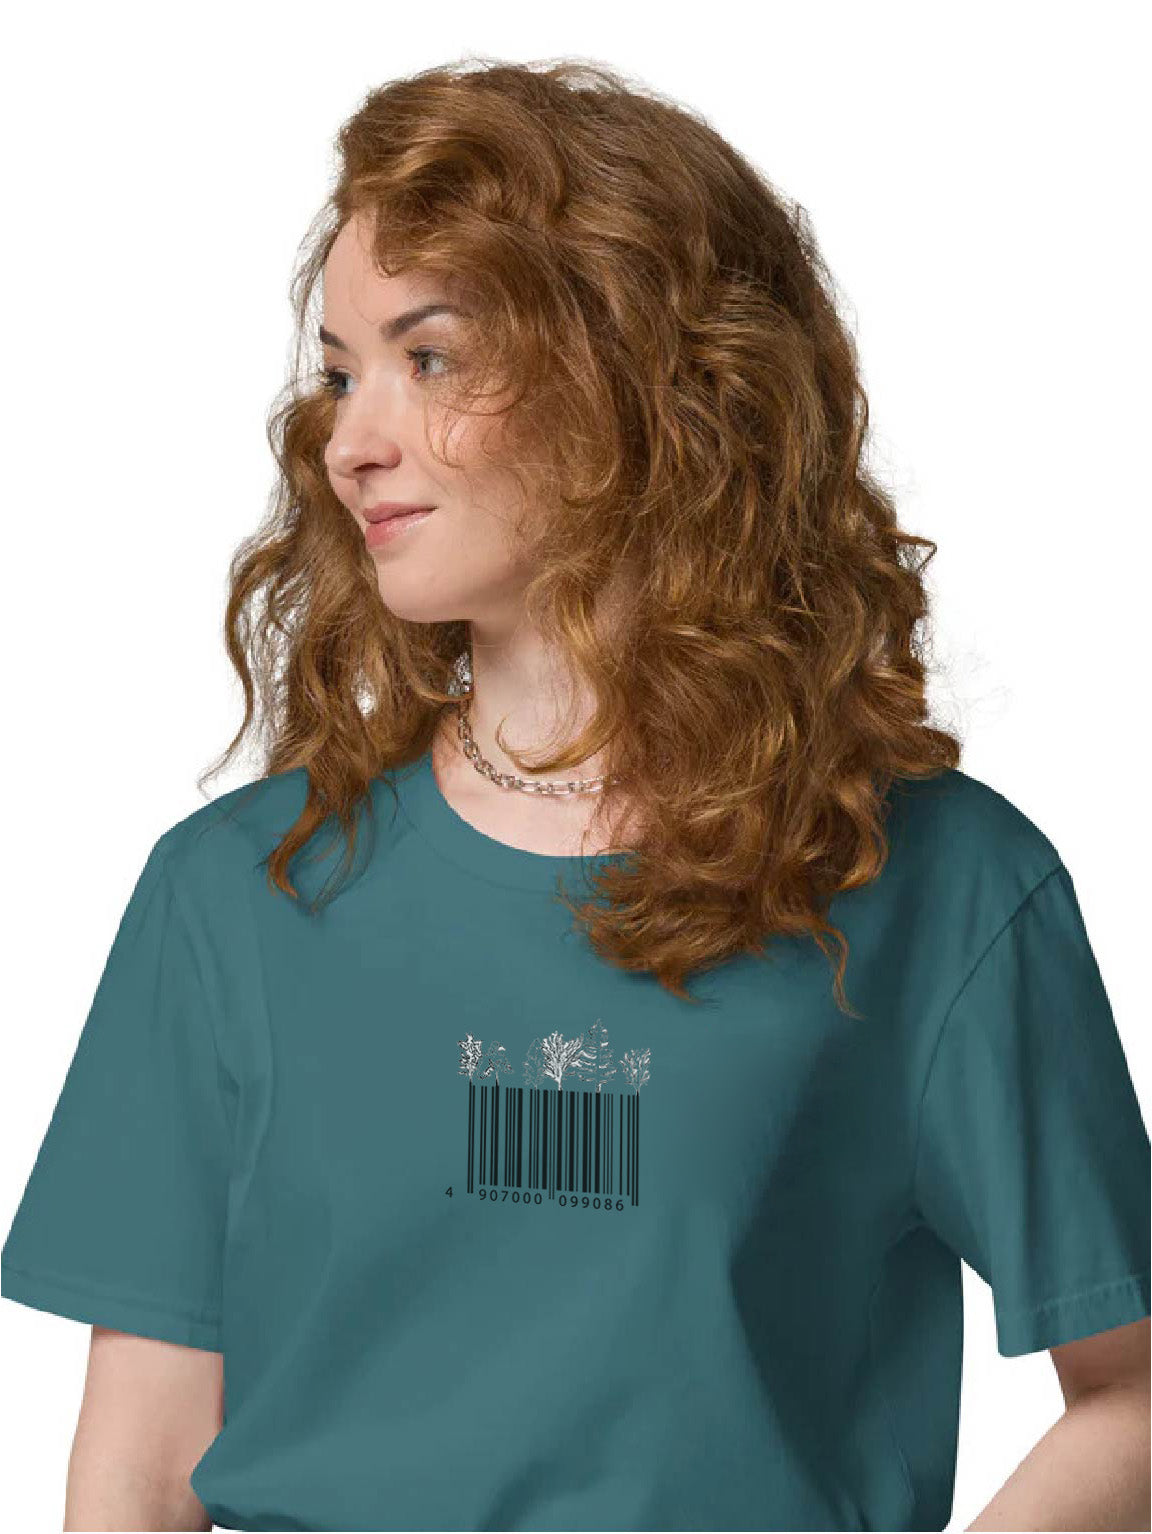 Deforestation - Unisex Organic Cotton T-Shirt - Limited Colours M - XXXL